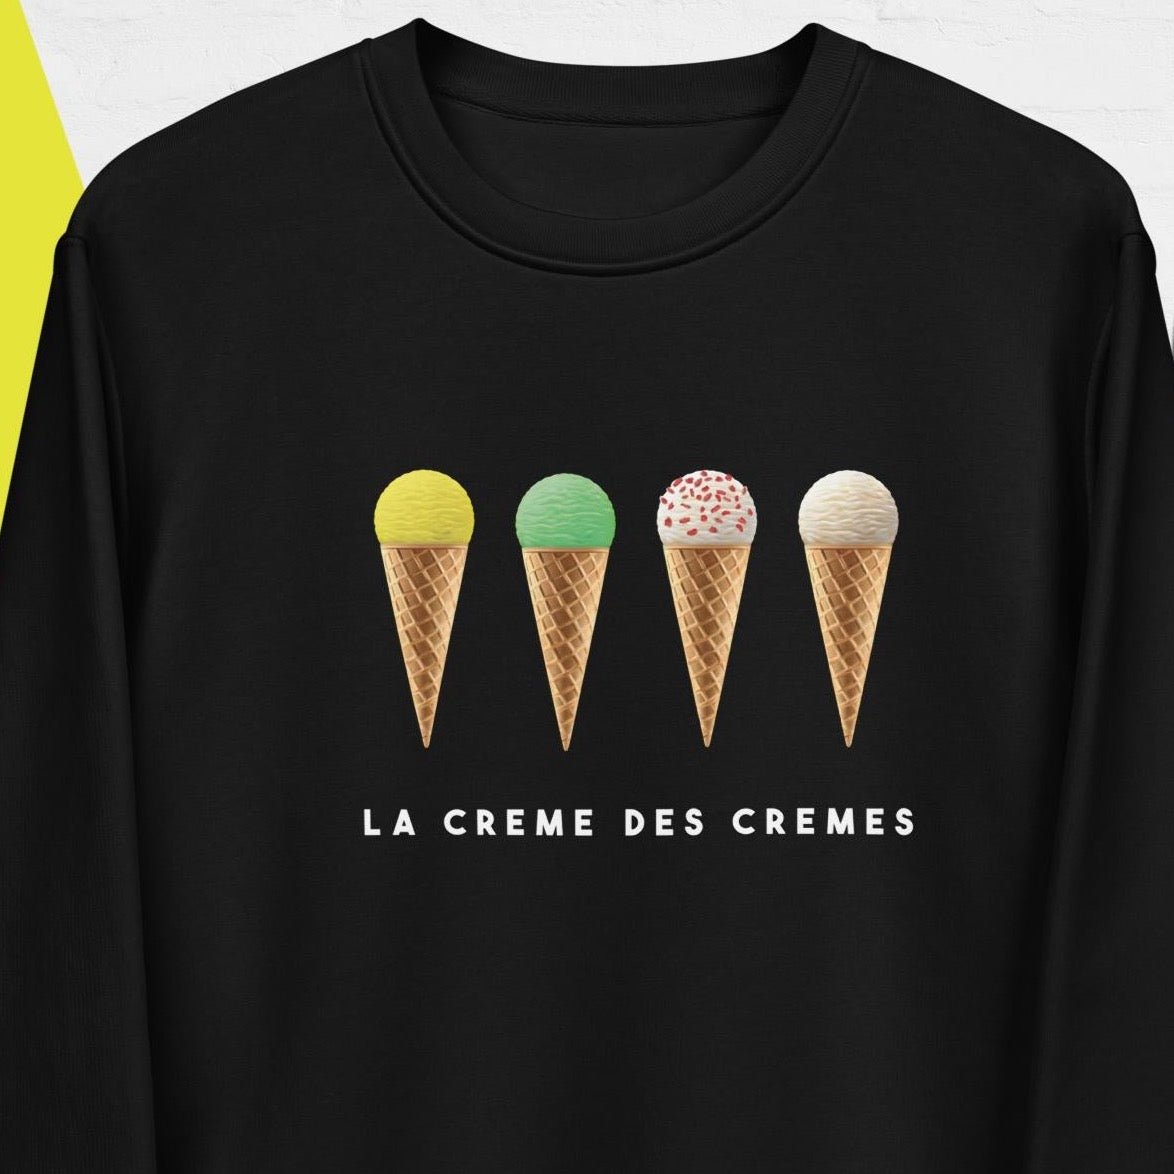 Cycling 'Tour de France' Organic Cotton Sweatshirt - Eco Sweatshirt